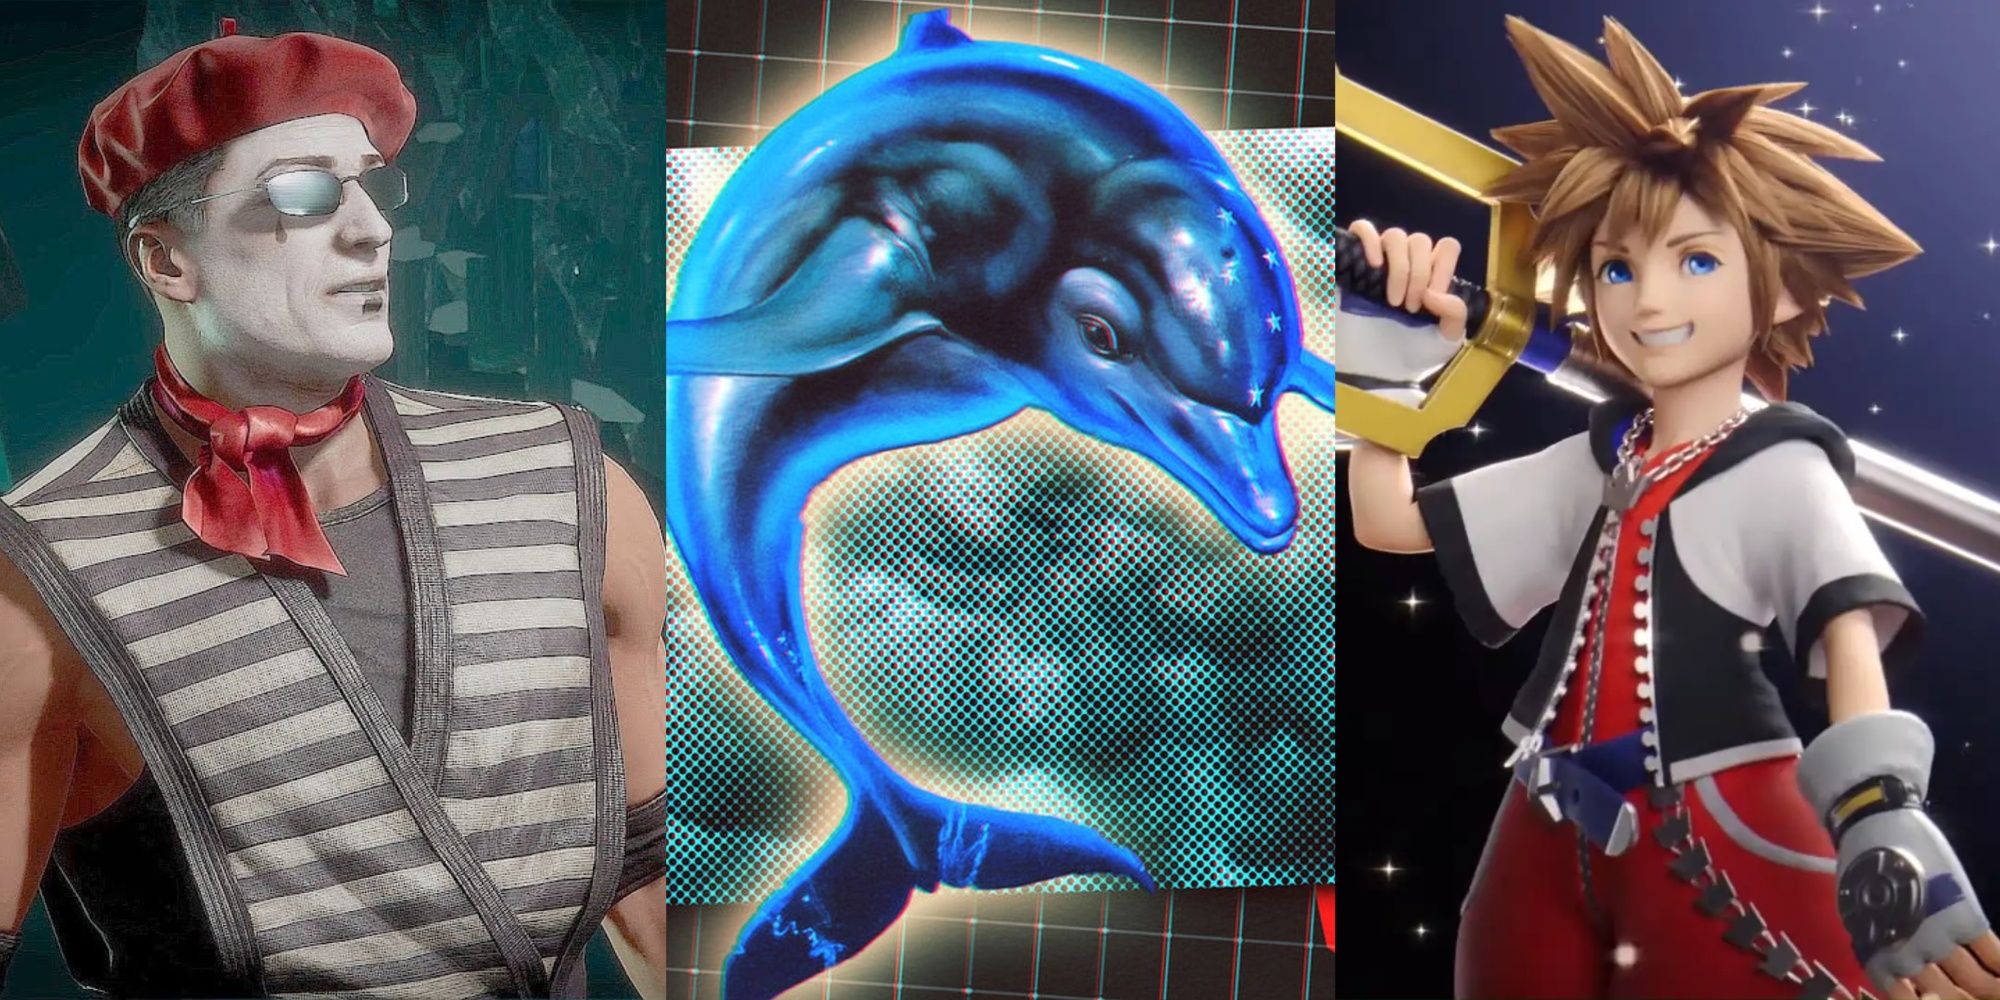 Ninja Mime Johnny Cage, Ecco The Dolphin, and Sora from Kingdom Hearts